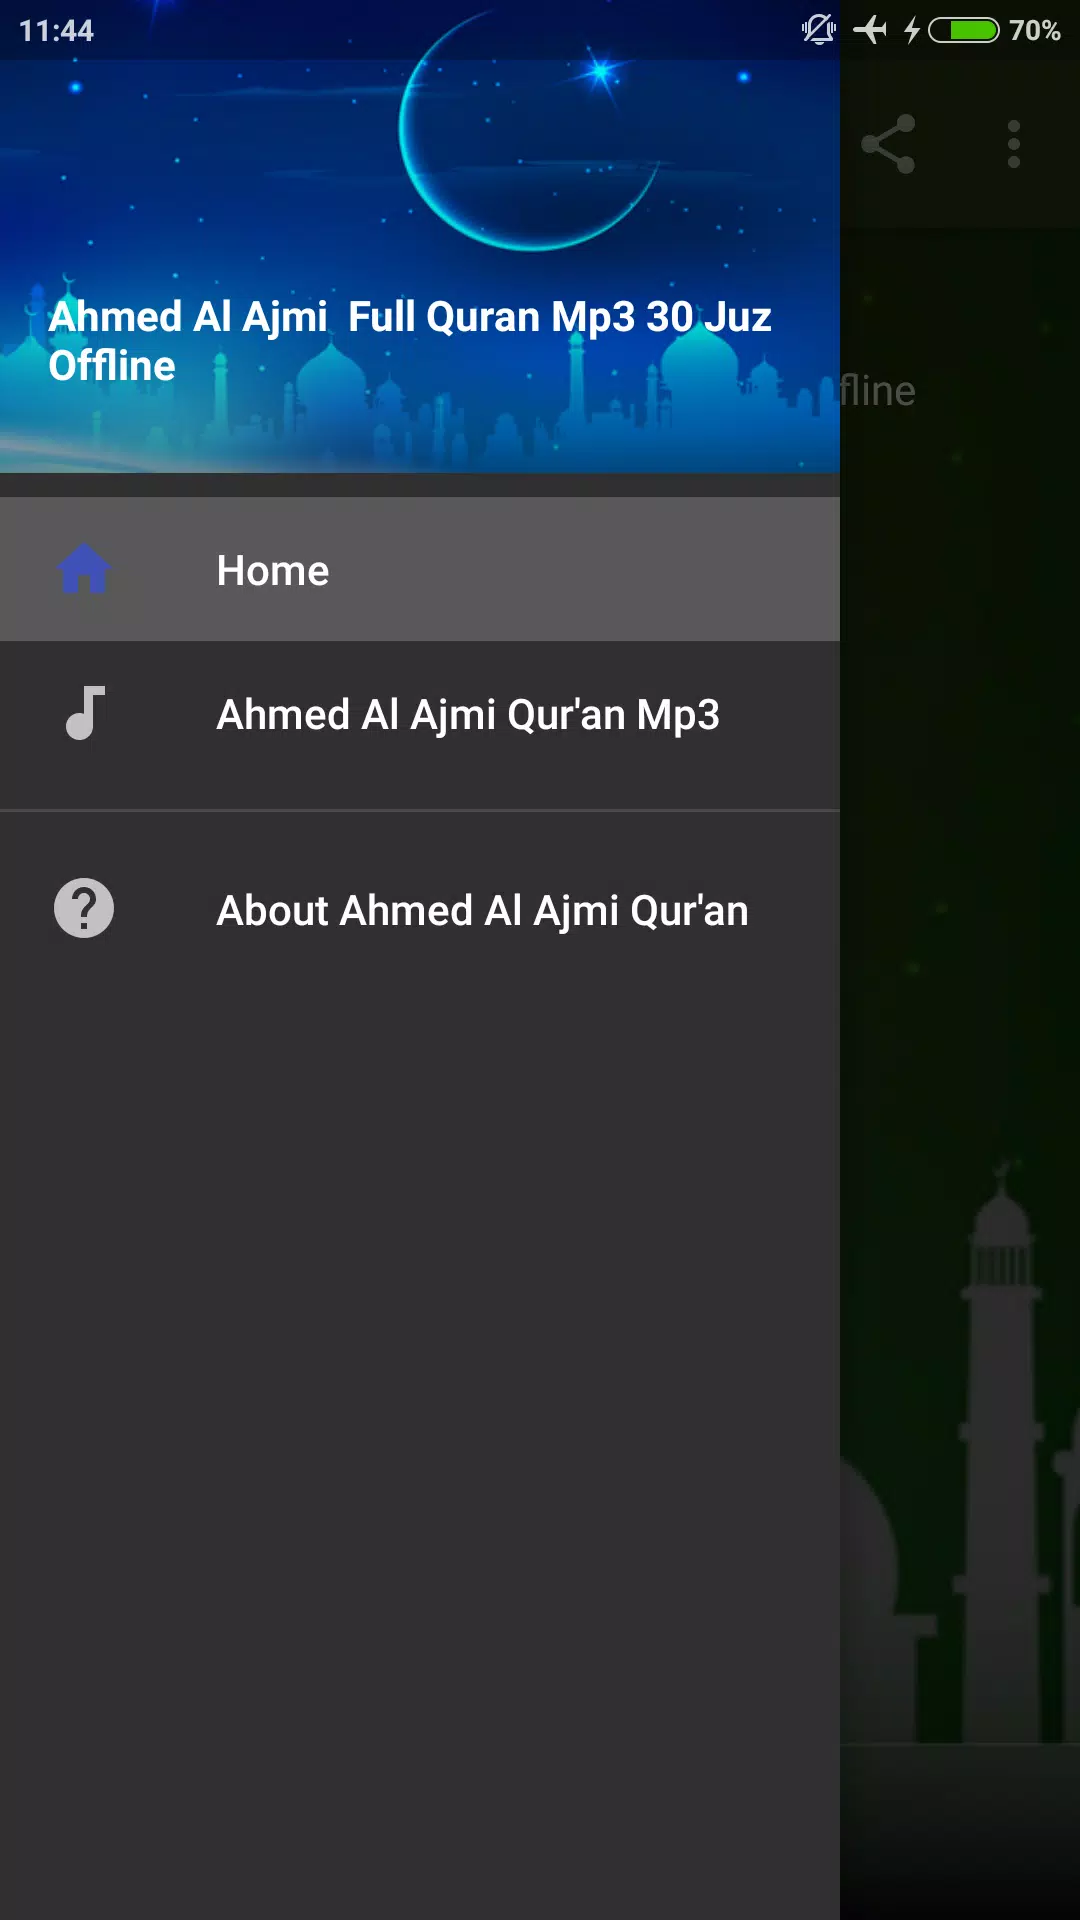 Ahmed Al Ajmi Full Quran Mp3 30 Juz APK for Android Download